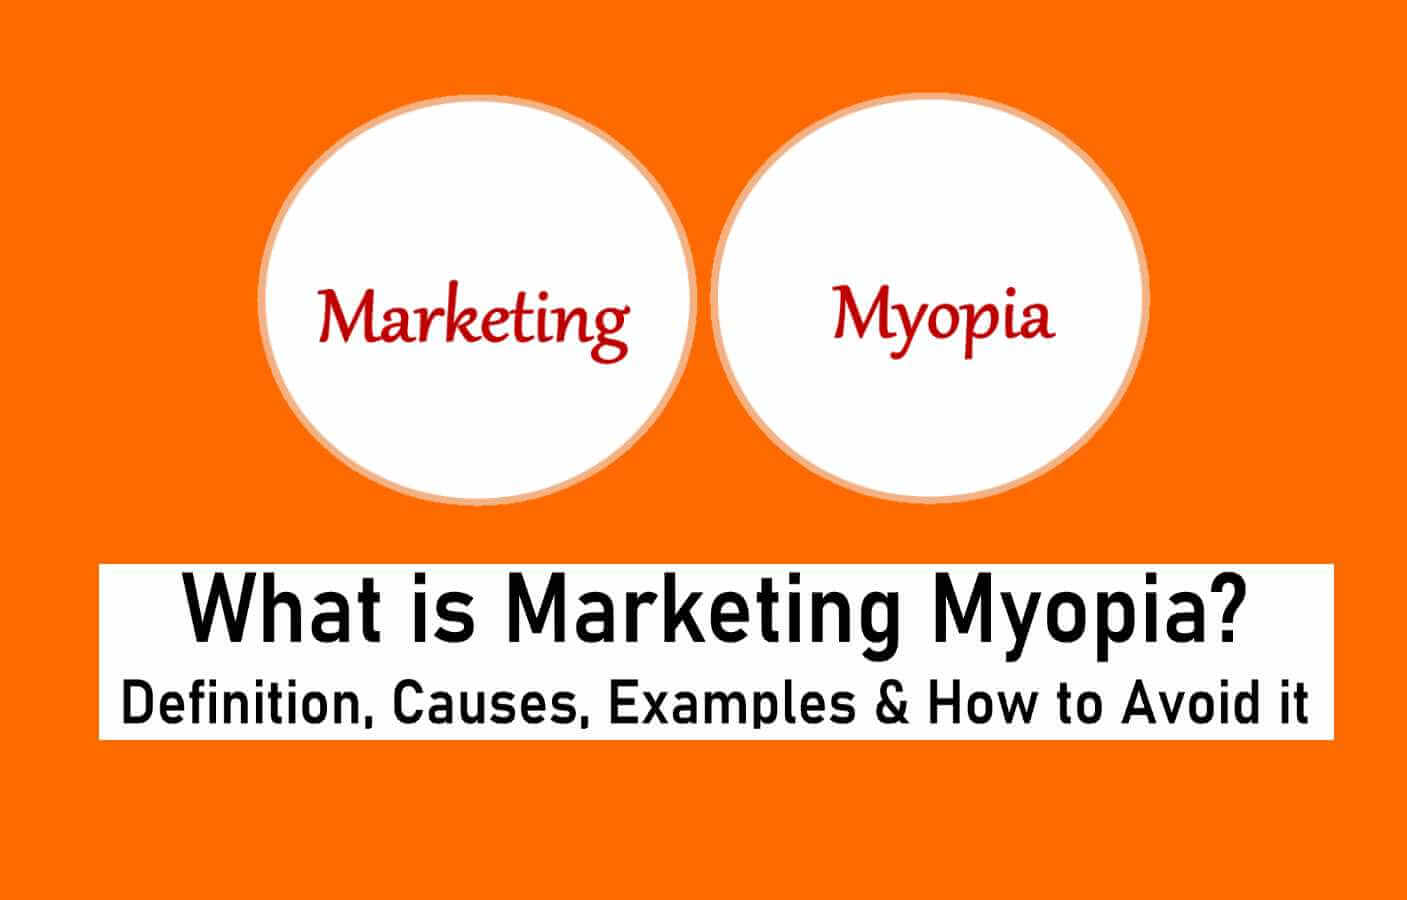 myopia definition of myopia